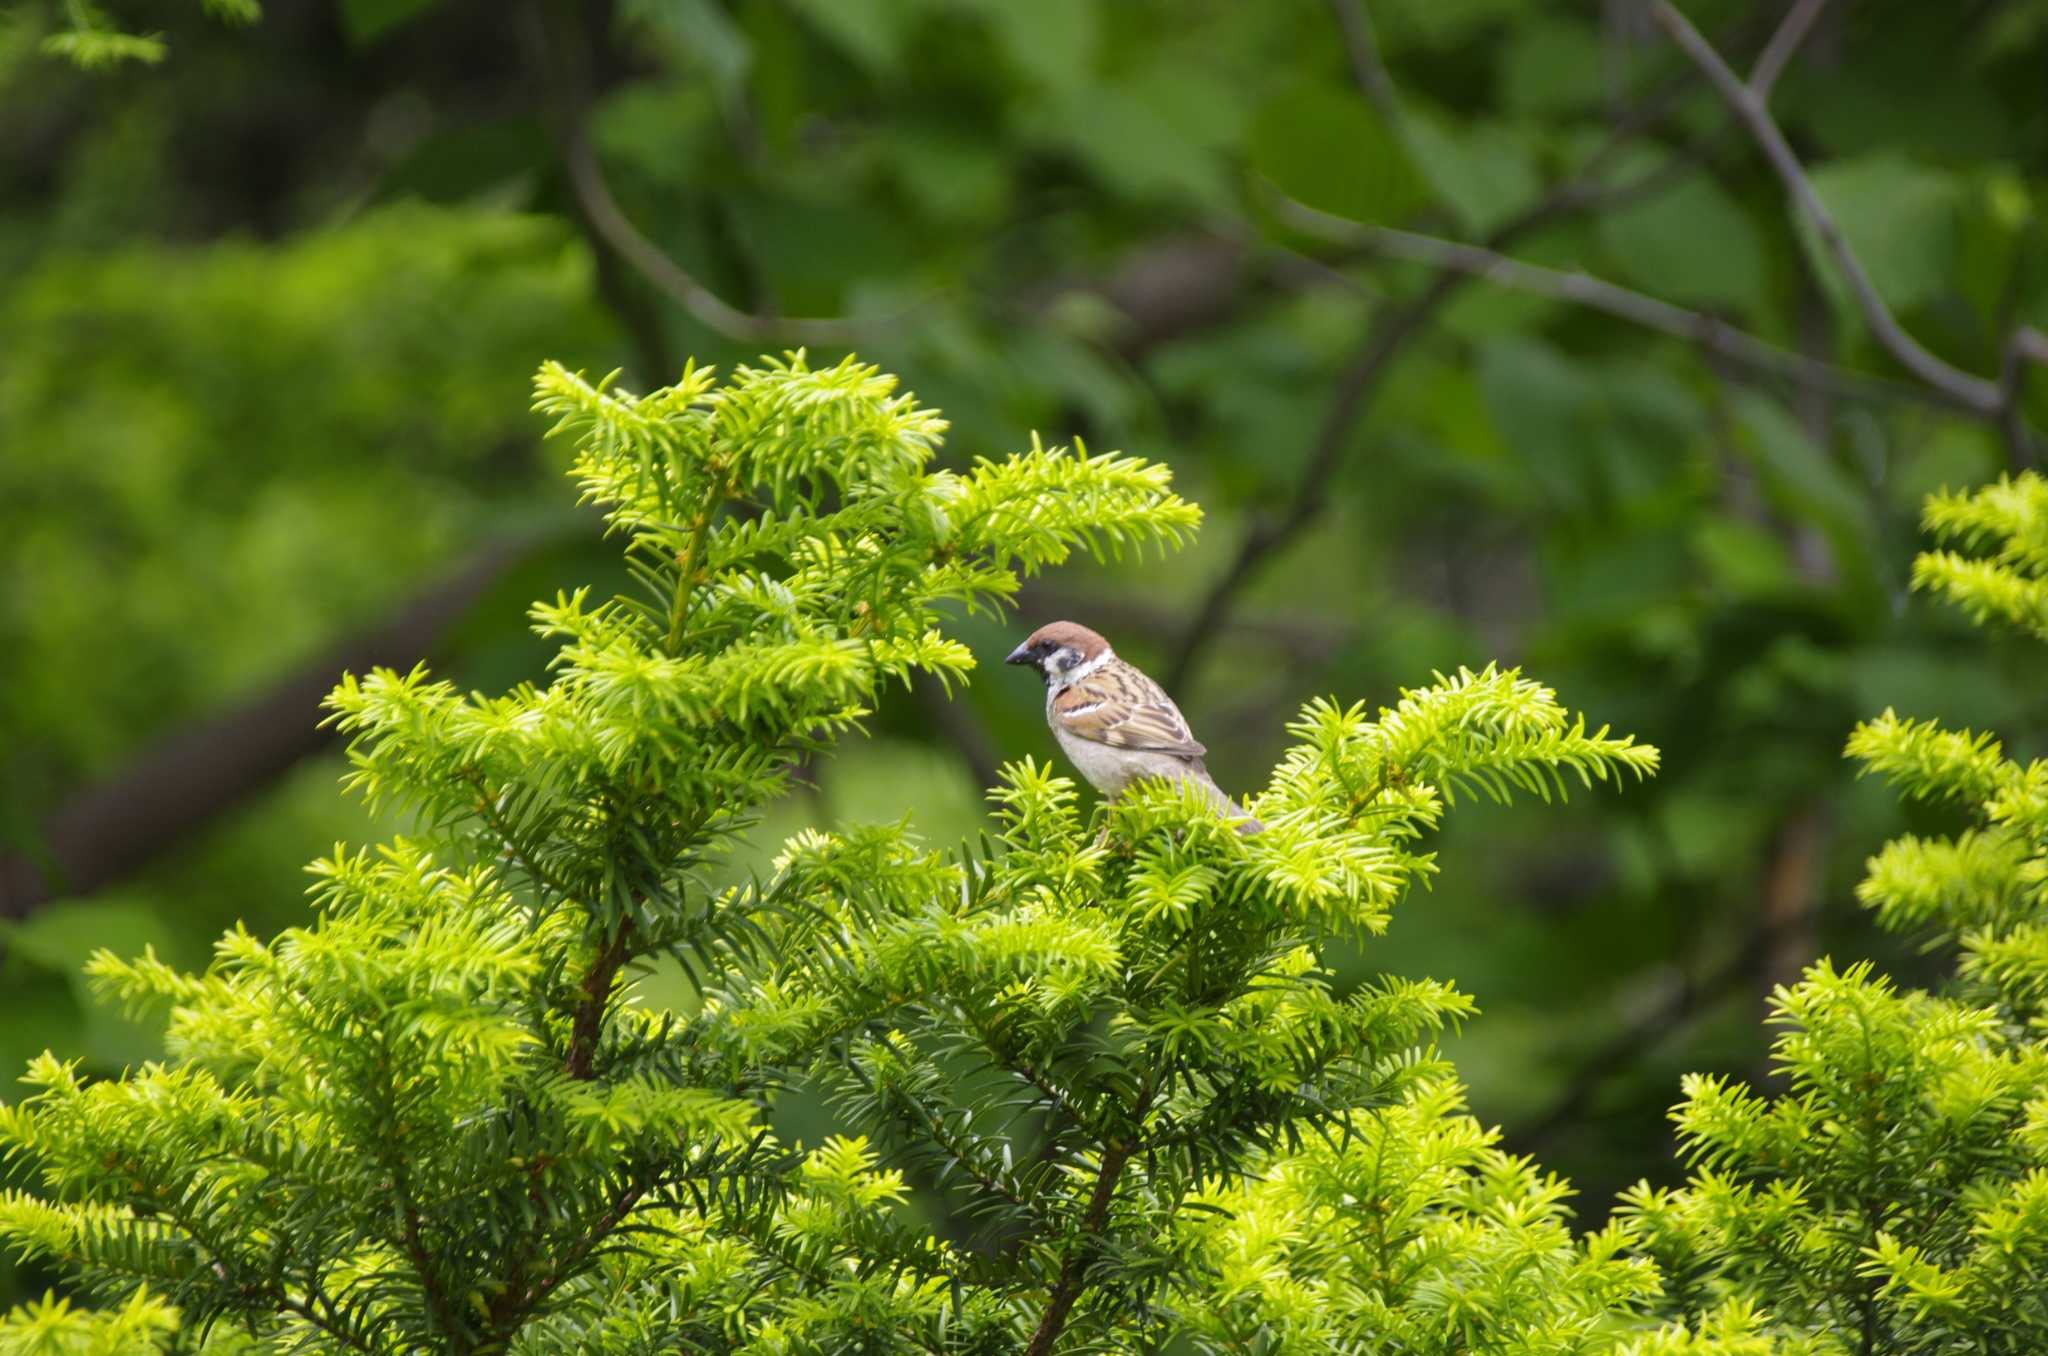 Photo of Eurasian Tree Sparrow at 百合が原公園 by oyajii